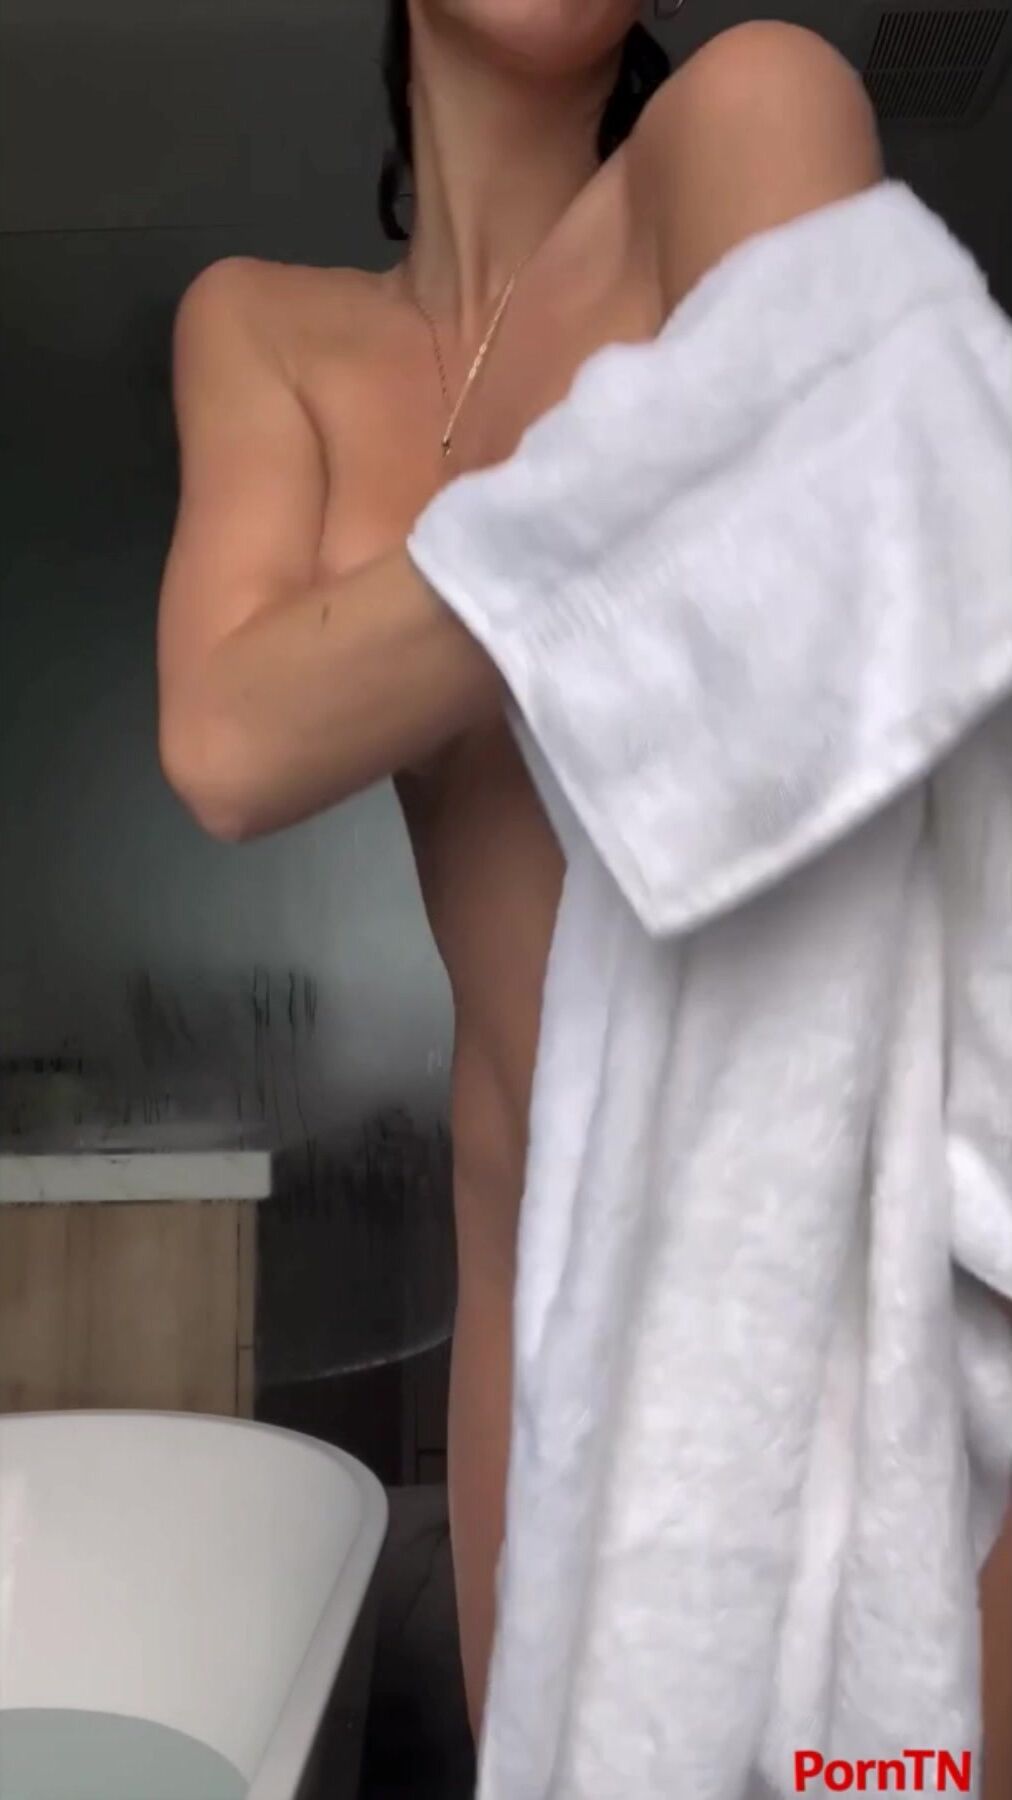 Rachel Cook full nude shower